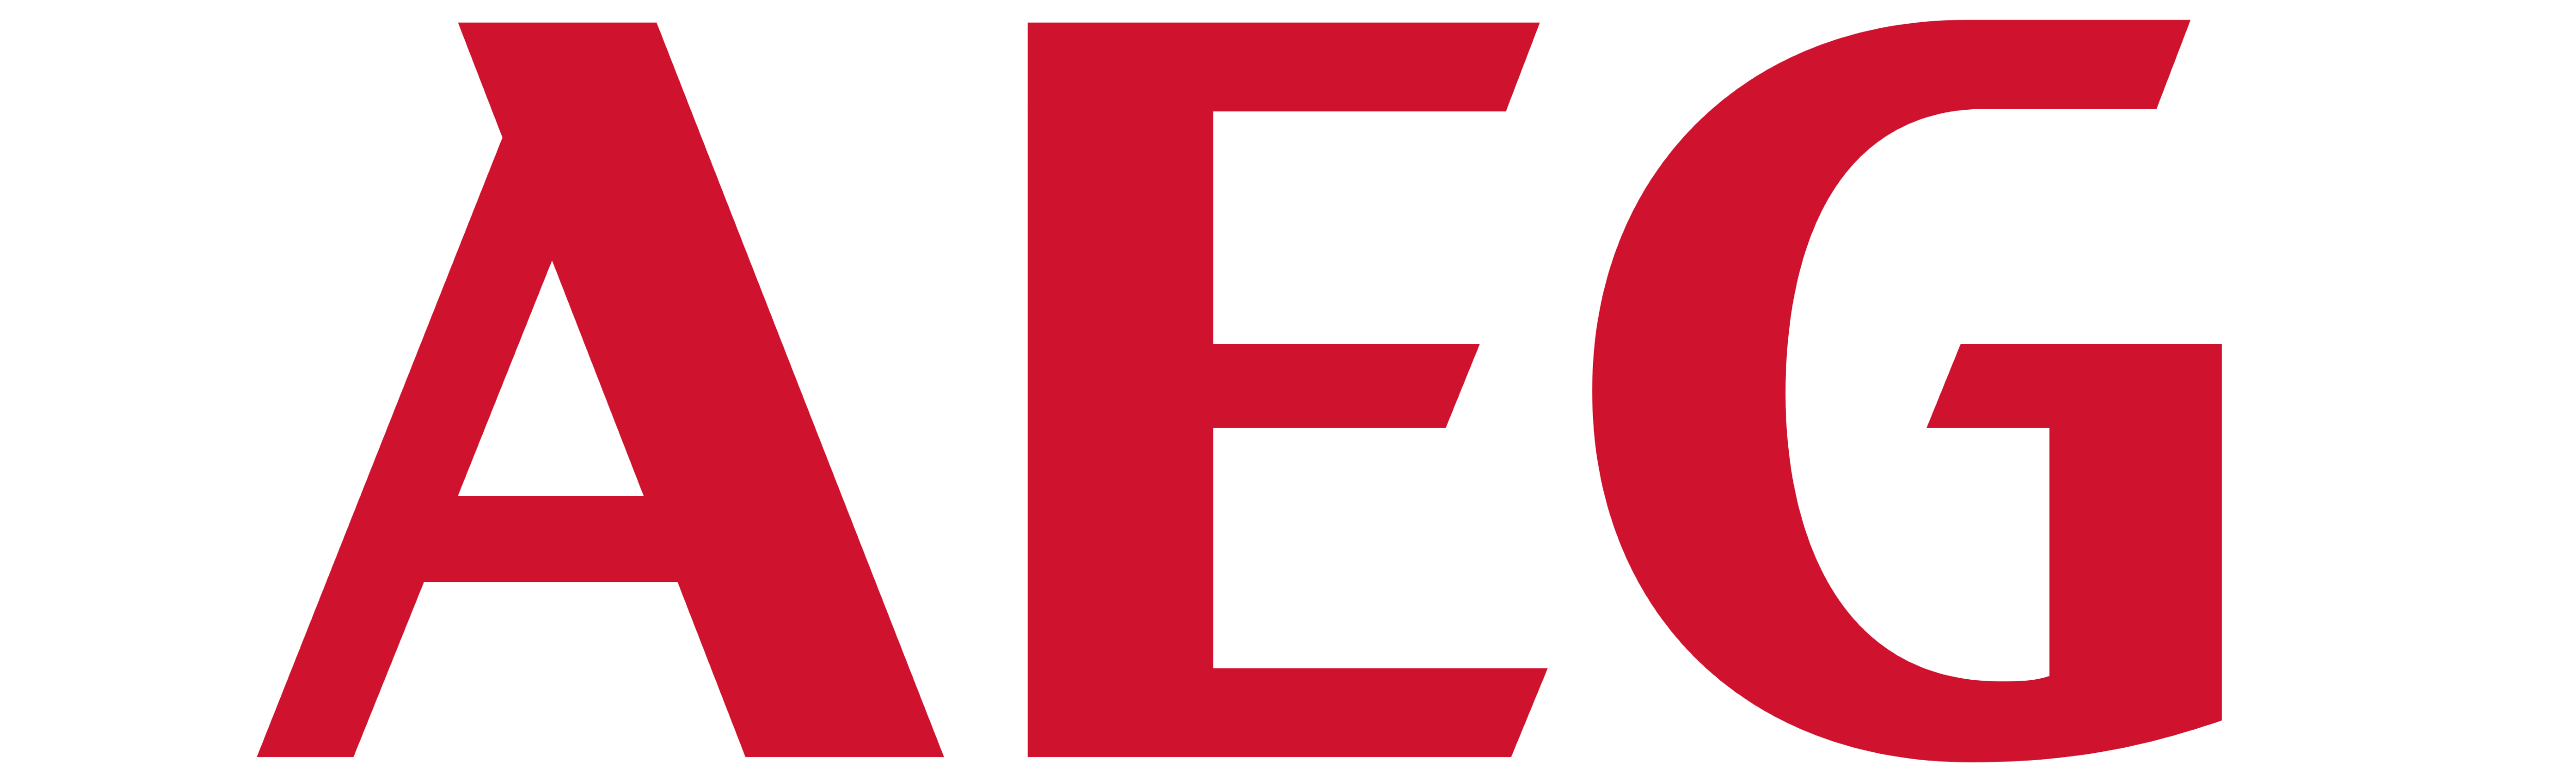 Aeg vector Logos